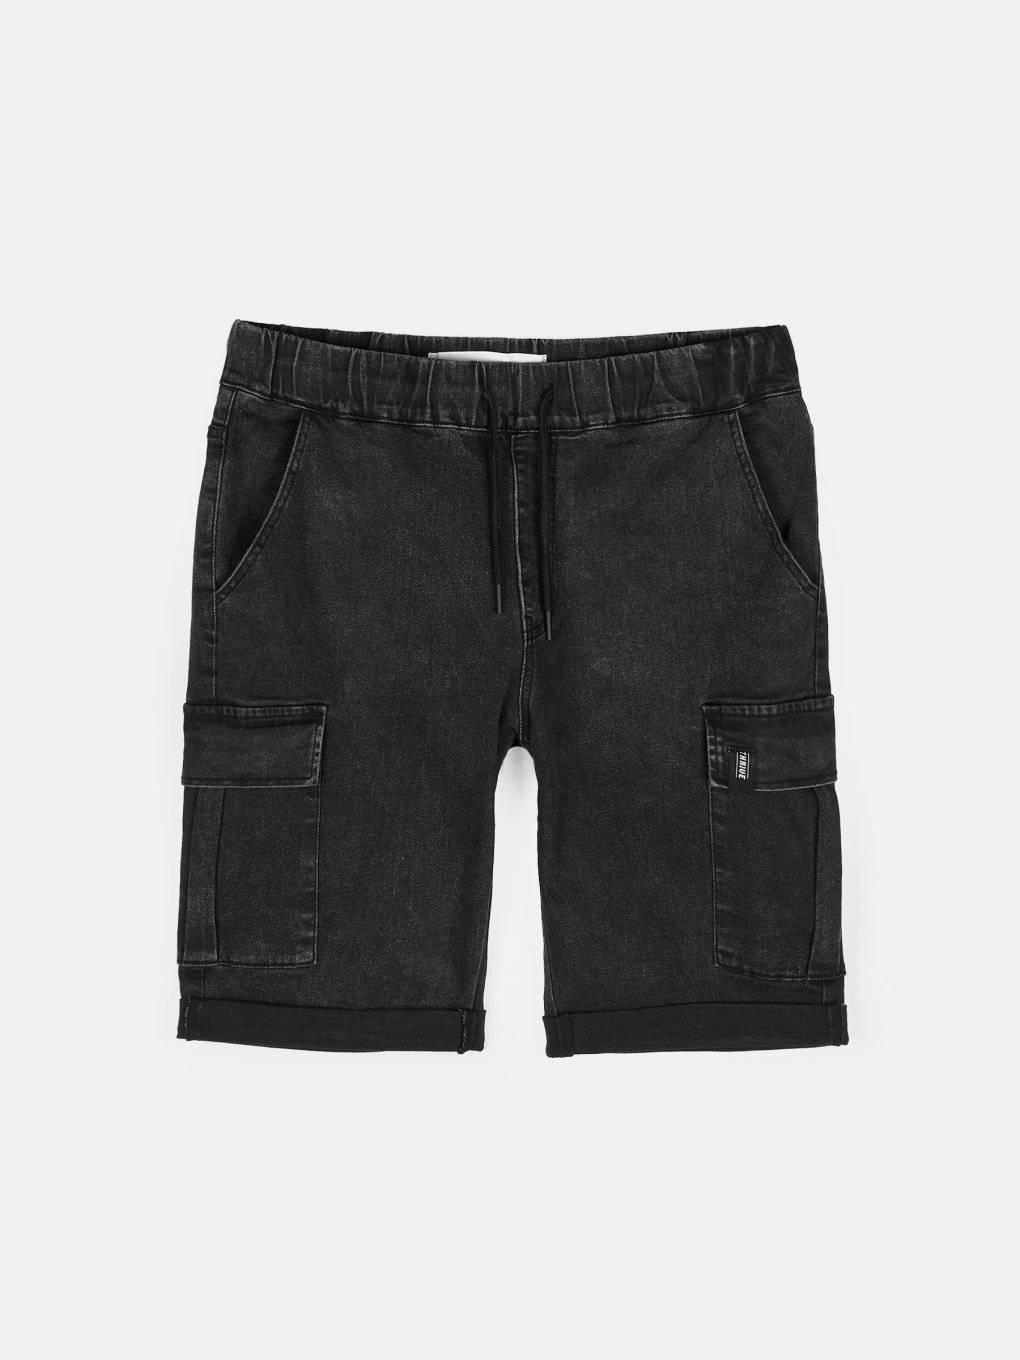 Cargo-Shorts aus Denim